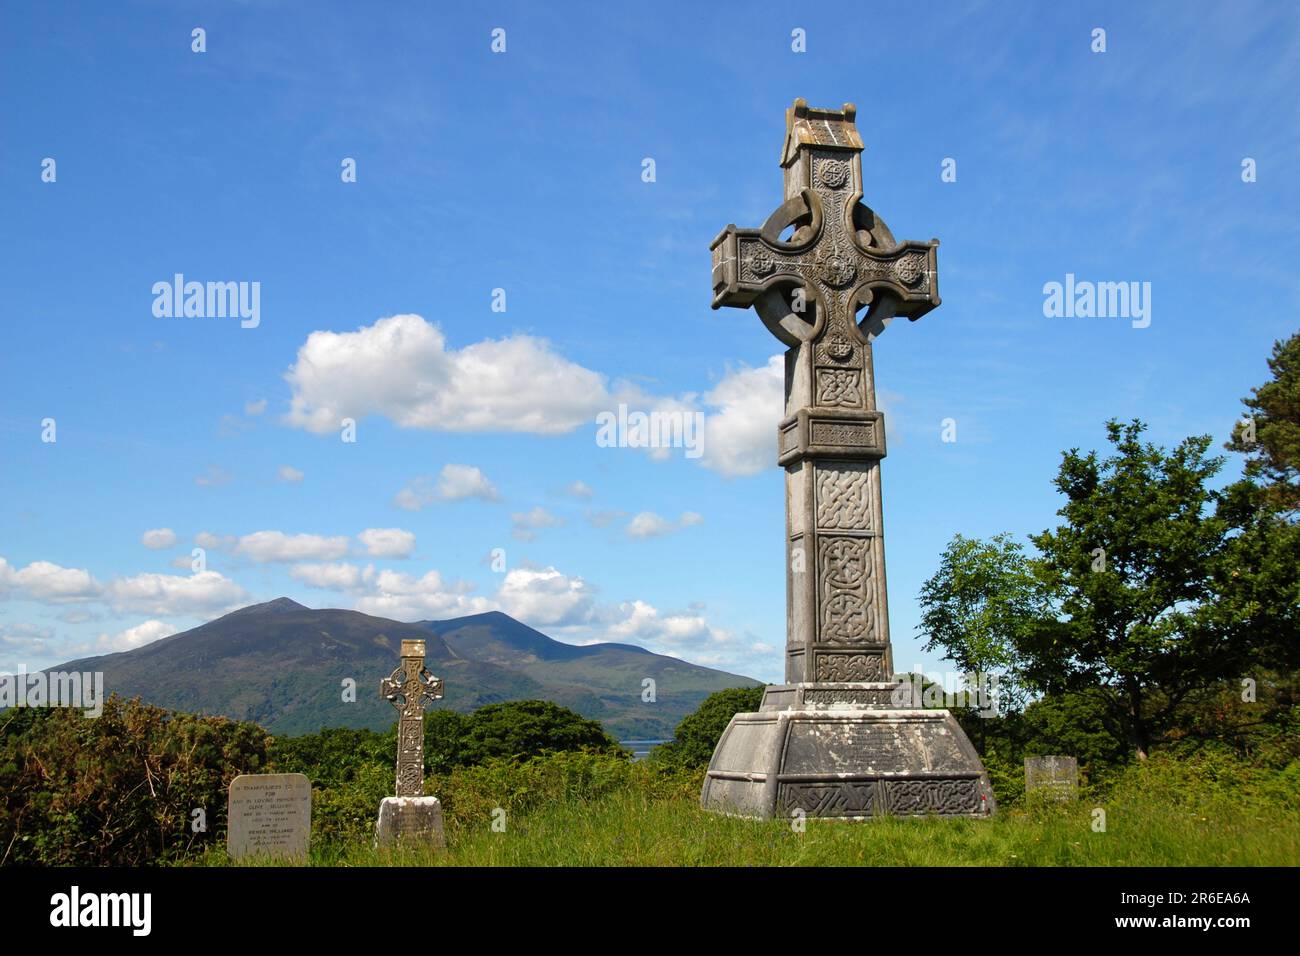 Tombe de Rudolf Erich Raspe, auteur de Muenchhausen, cimetière de Muckross, anneau de Kerry, comté de Kerry, Celtic Cross, Irlande Banque D'Images